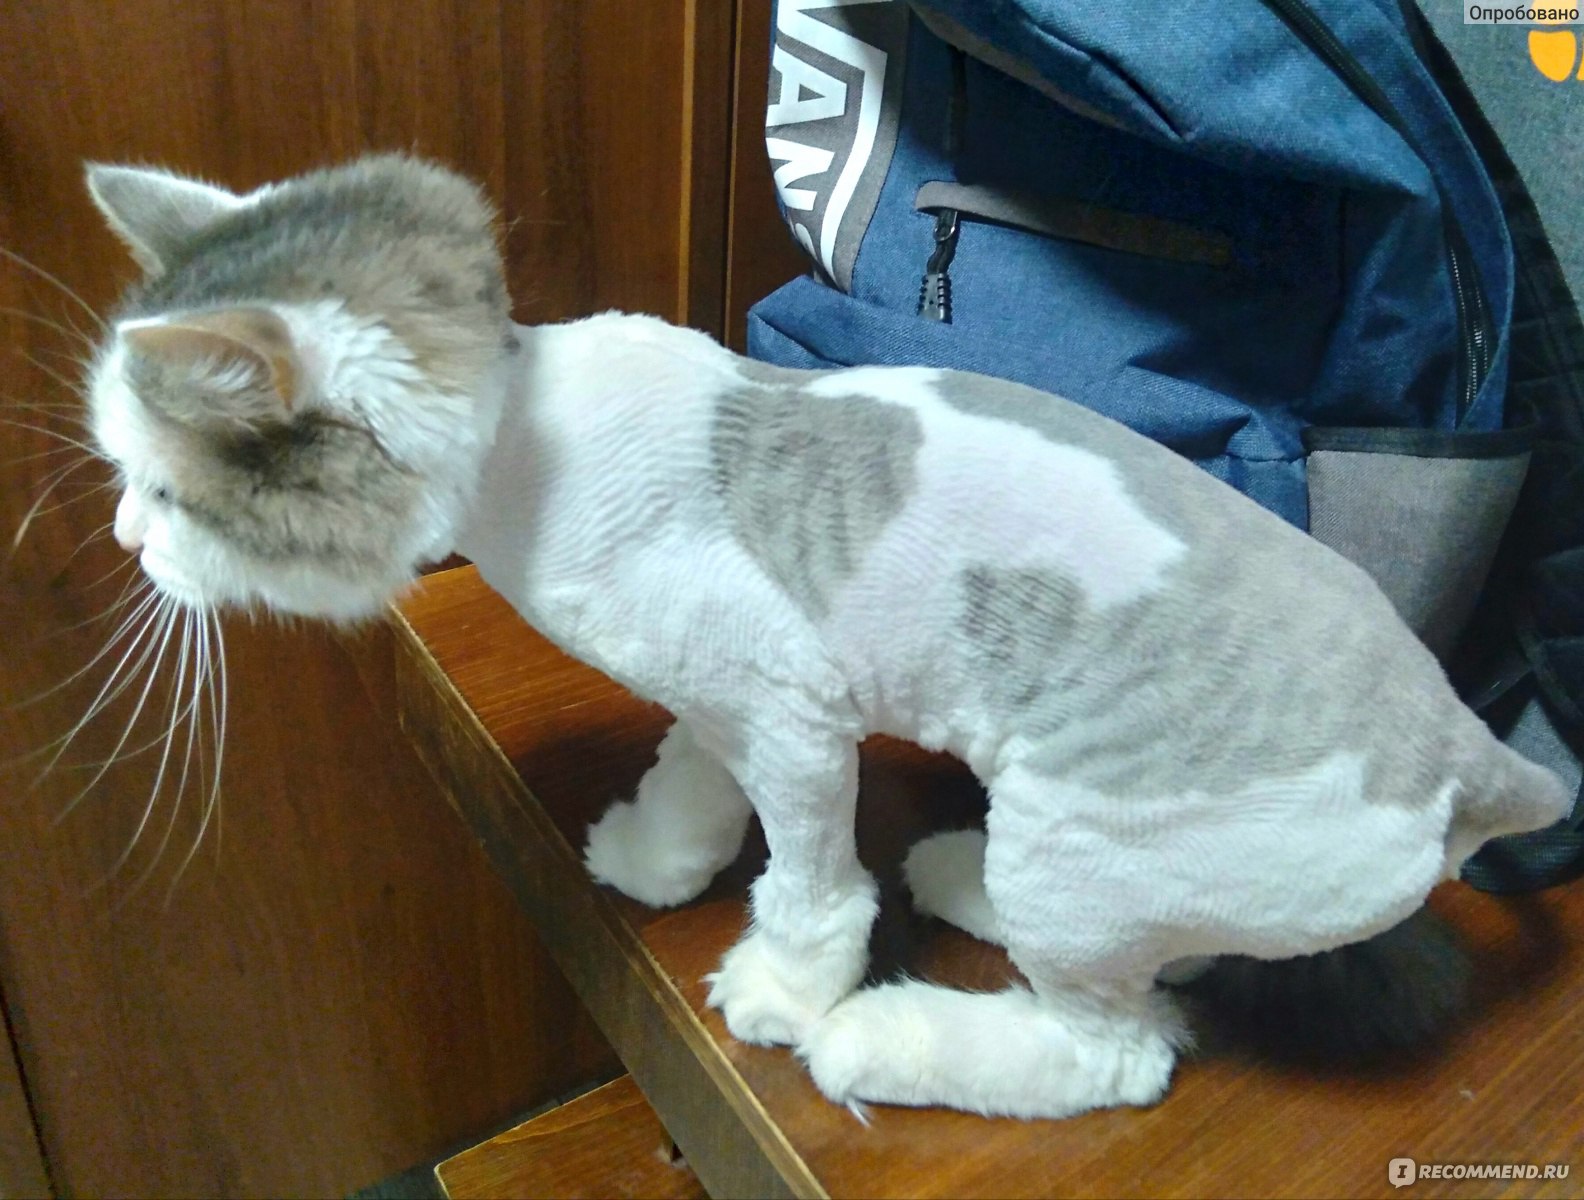 Услуги груминг-салонов для животных Стрижка кошек - «Никогда не стригите  кошек!» | отзывы